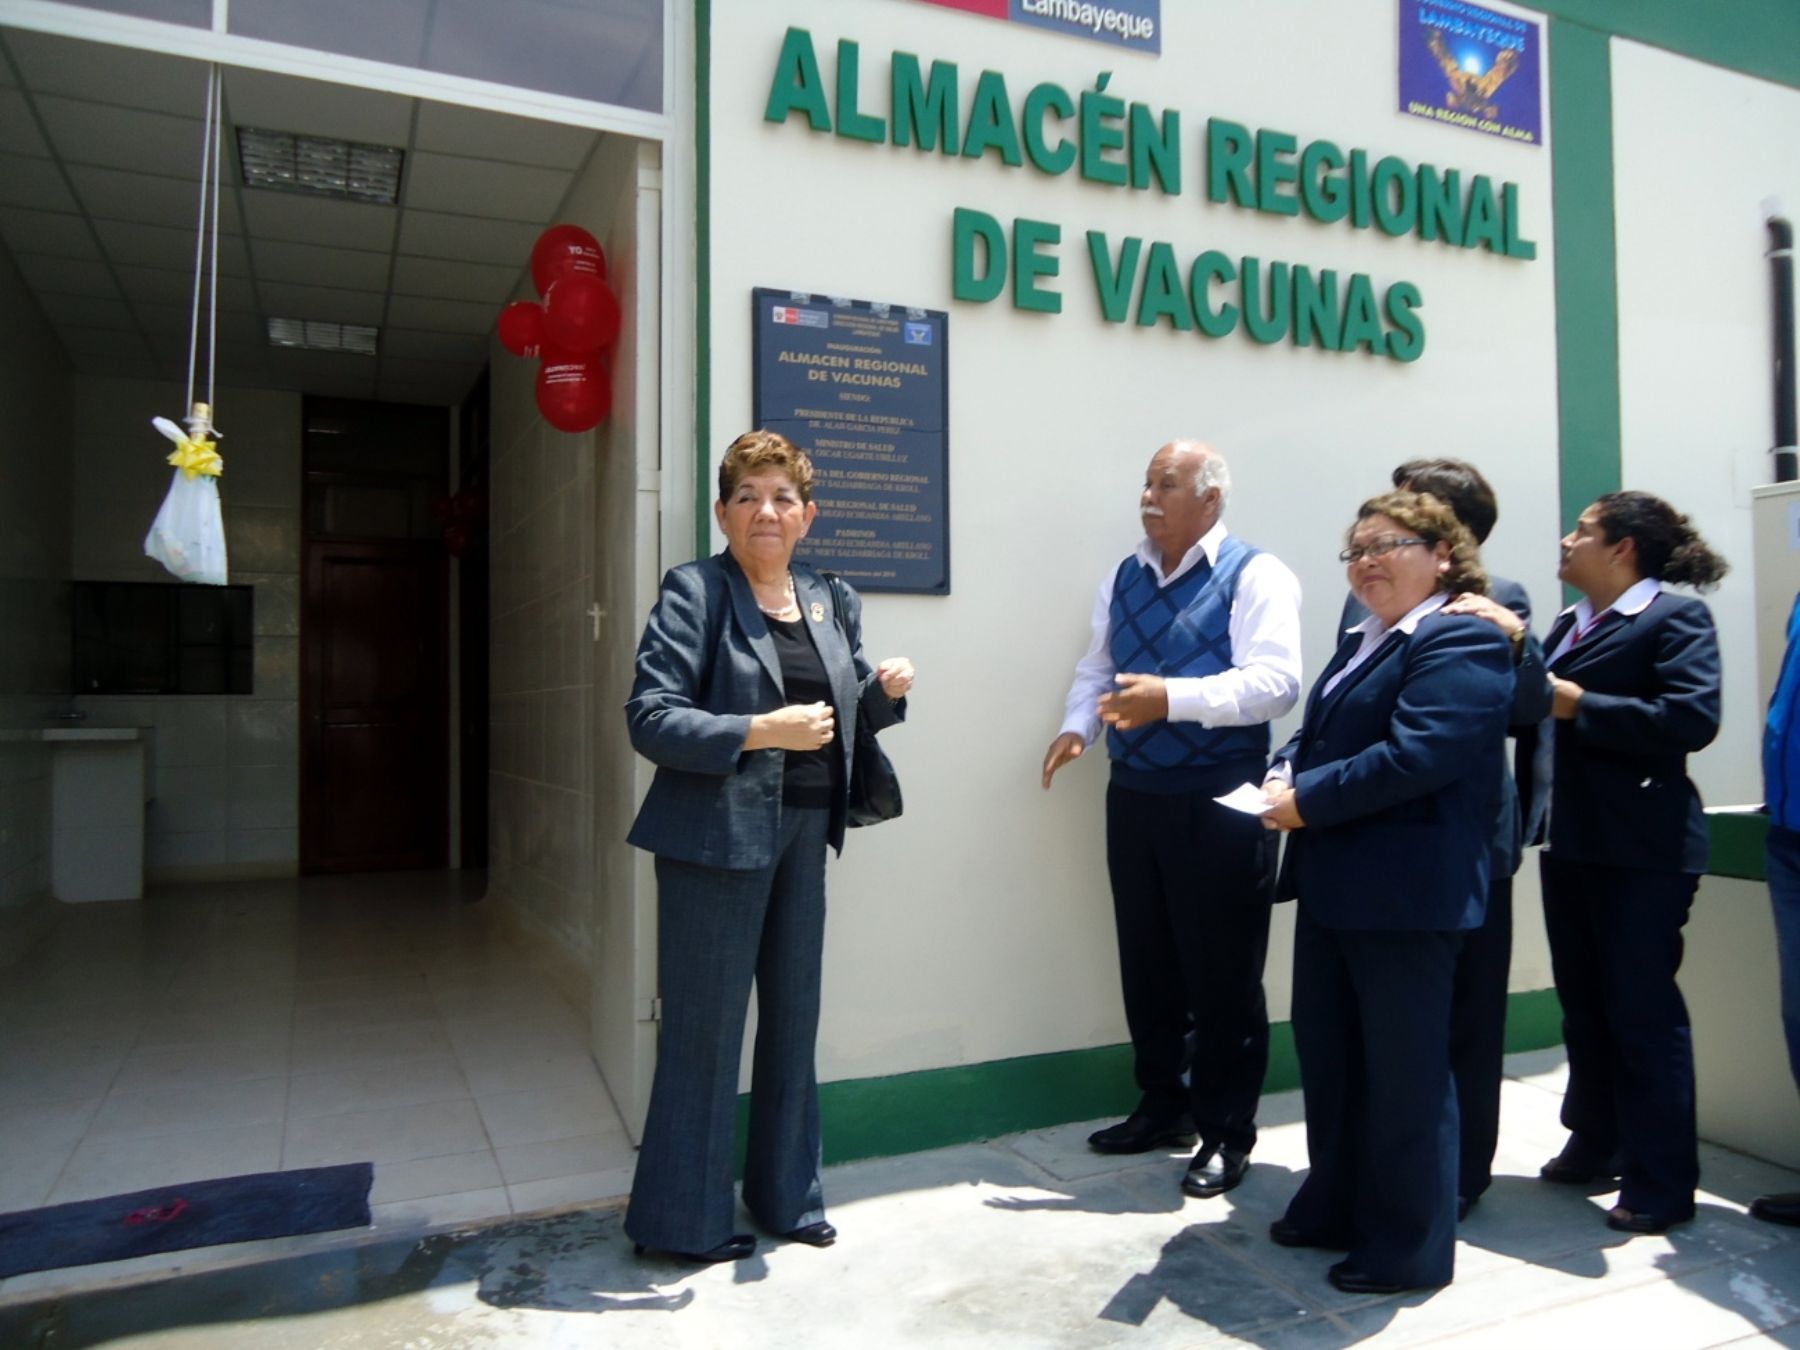 El almacén regional de vacunas de Lambayeque tiene capacidad para almacenar 40,000 litros. Foto: Gobierno regional de Lambayeque.